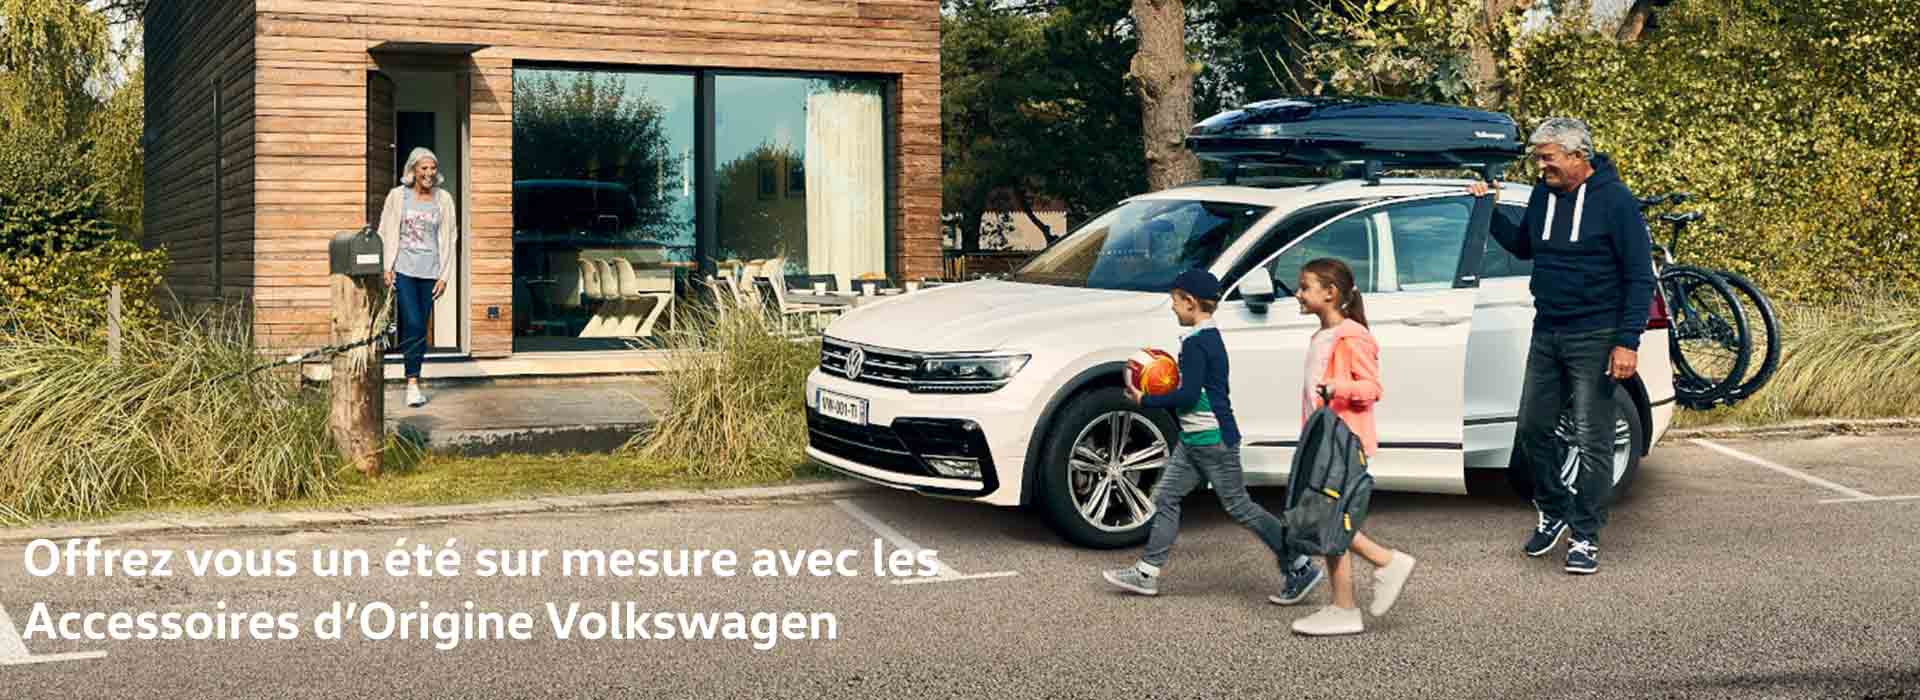 Offre accessoires été 2021 - Audi Laval - Véhicules neufs et